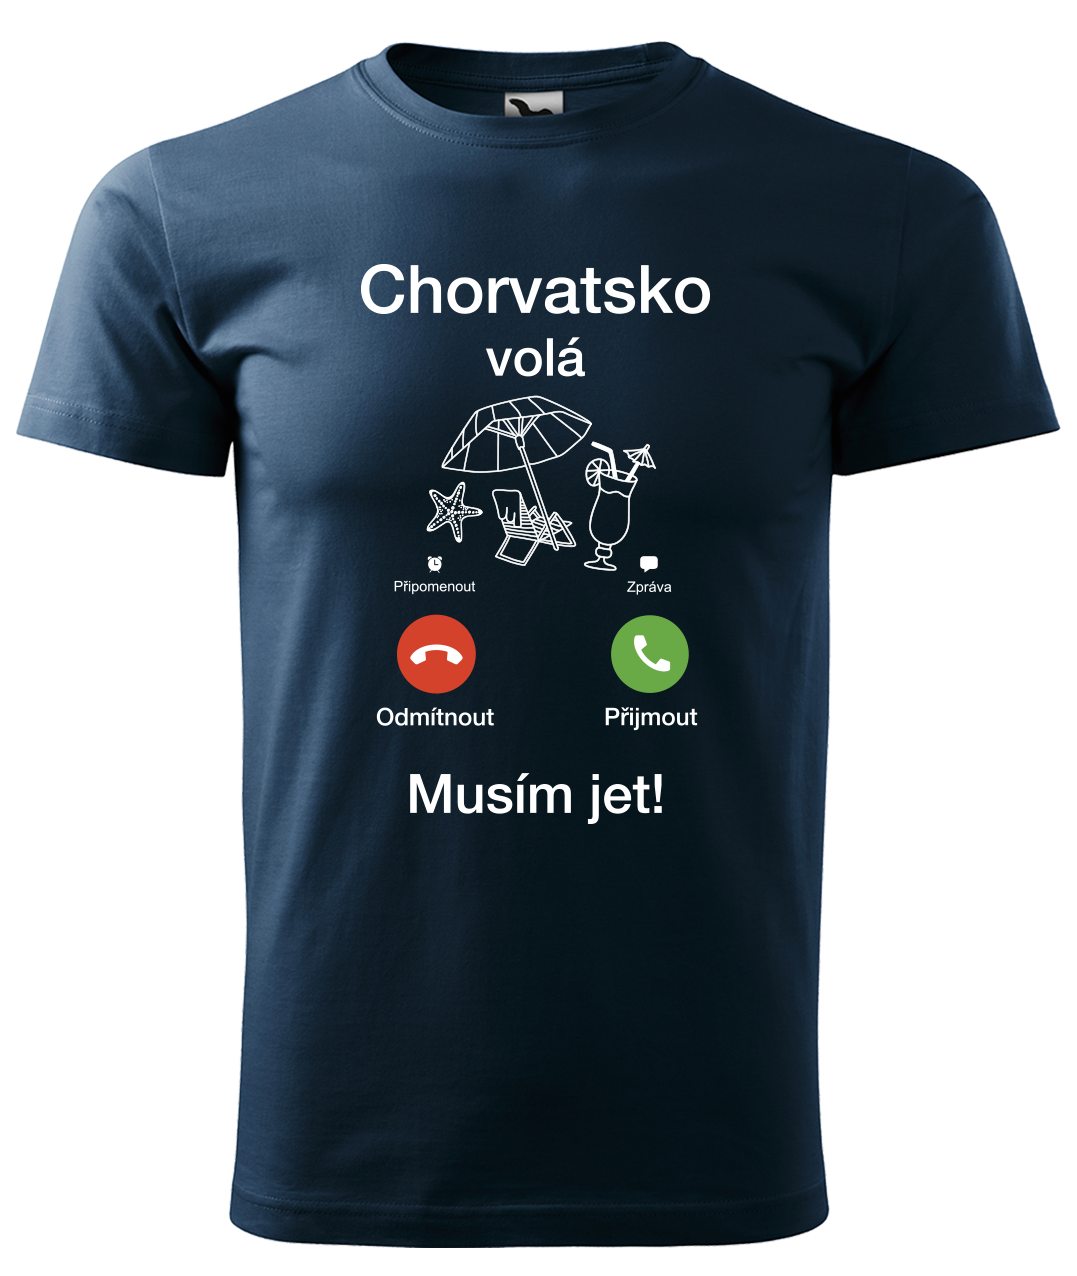 Dětské cestovatelské tričko - Chorvatsko volá - musím jet! Velikost: 10 let / 146 cm, Barva: Námořní modrá (02)